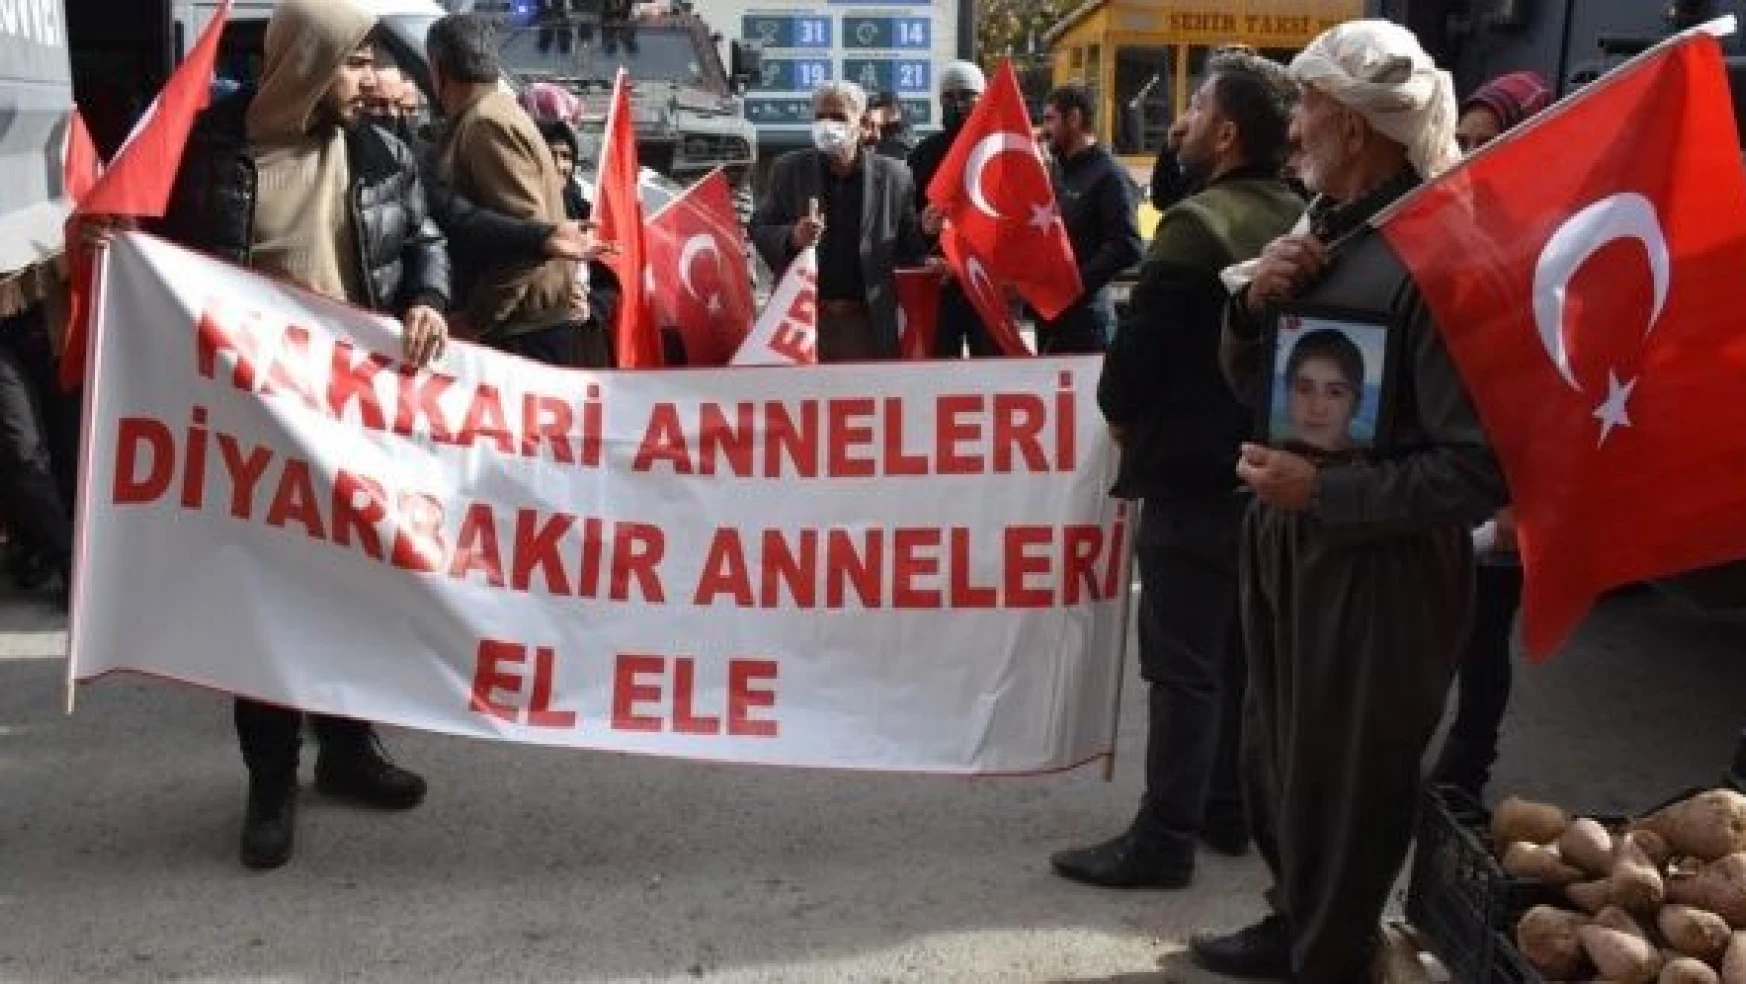 Hakkari'de evlat nöbetindeki aileler İstanbul'daki terör saldırısını kınadı